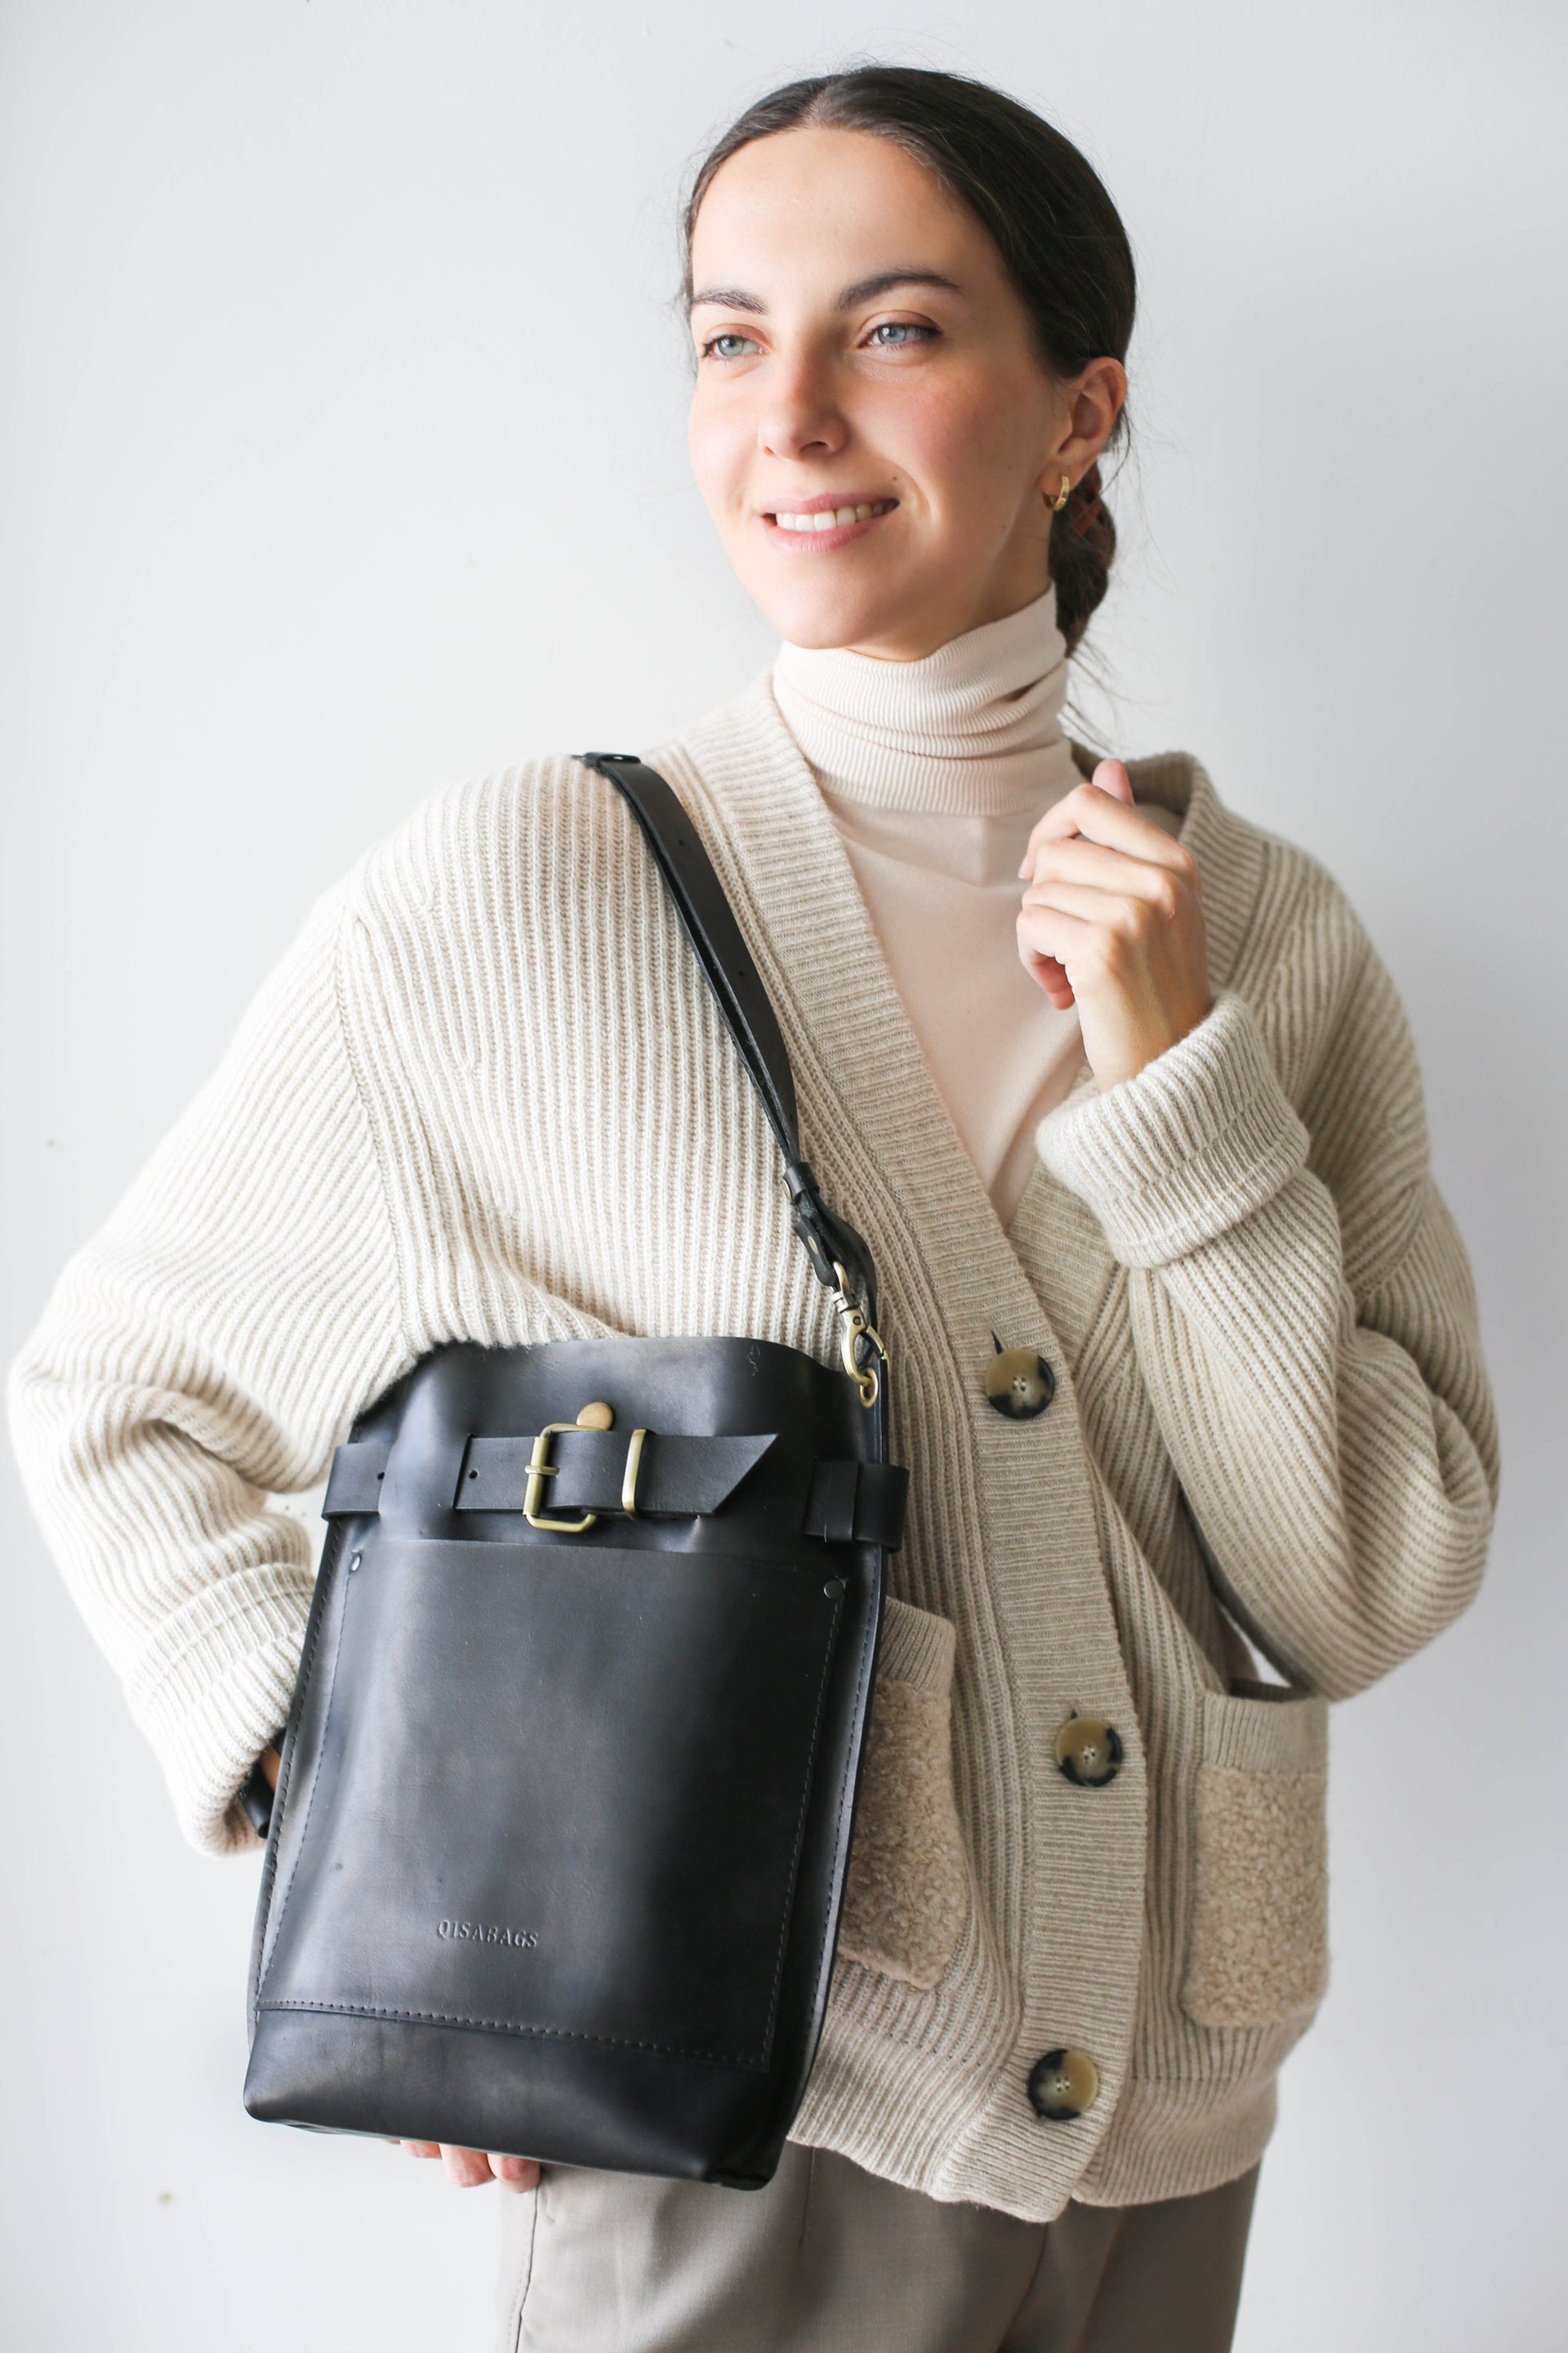 Black Leather Shoulder Bag for Women